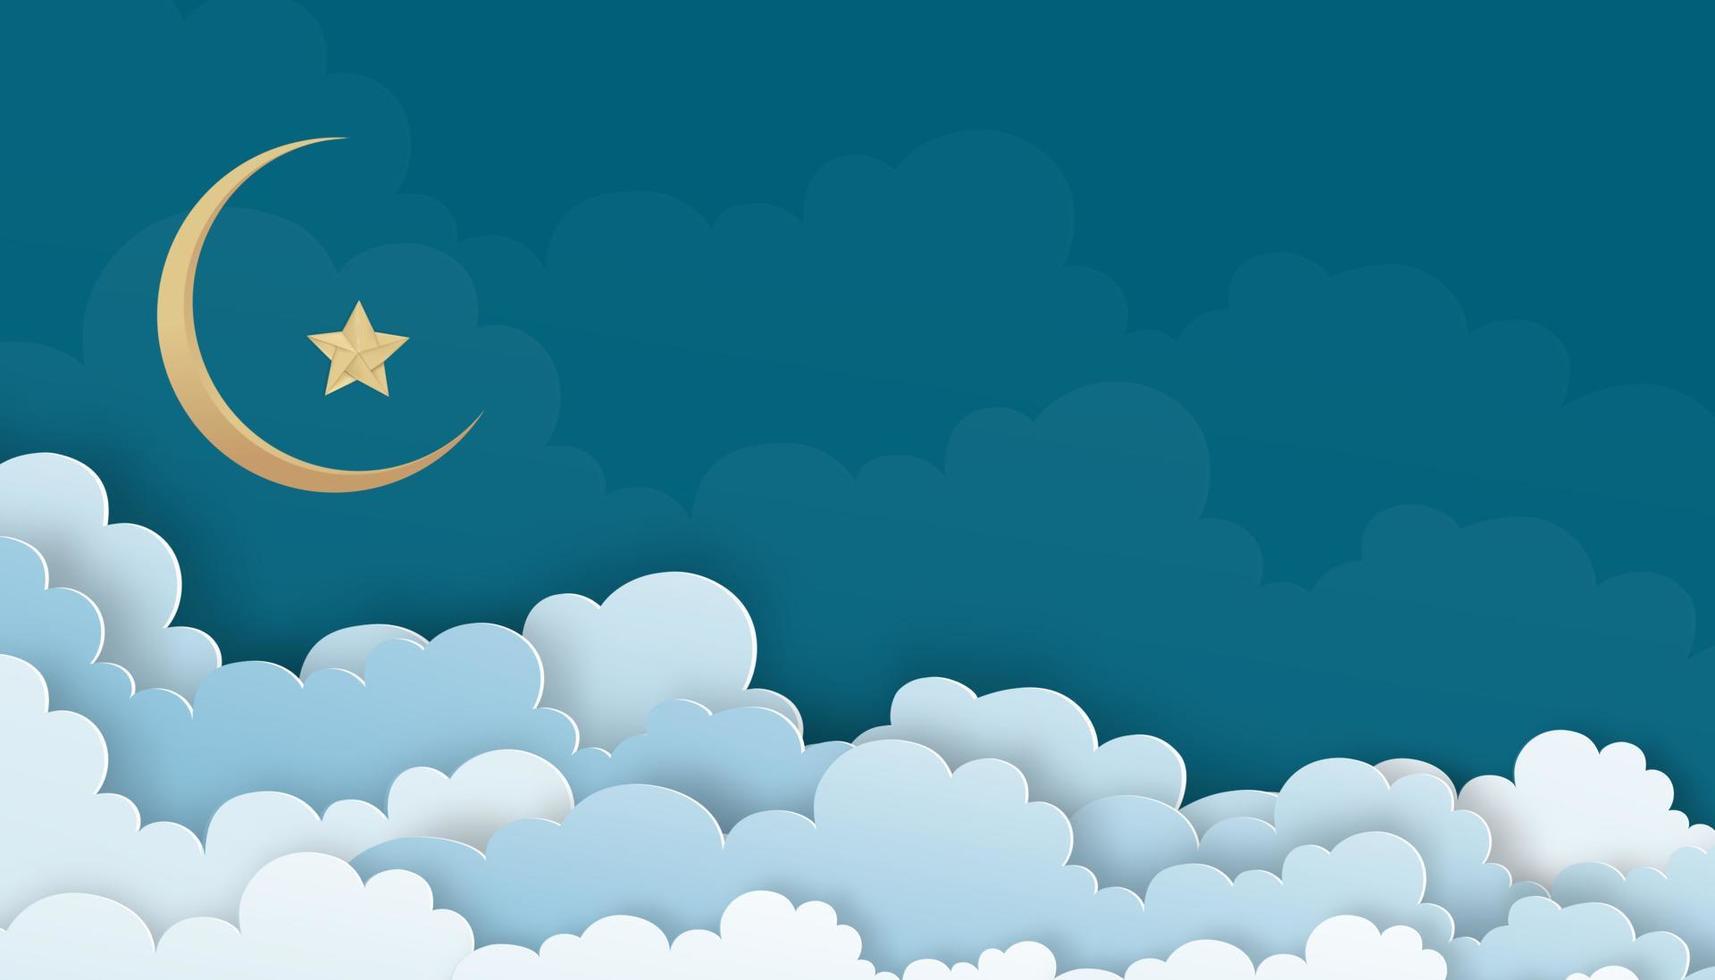 cielo blu con nuvole e falce di luna e stella, illustrazione vettoriale strati di cloudscape taglio di carta 3d, banner di sfondo della natura per la religione islamica, eid al-adha, eid mubarak, eid al fitr, ramadan kareem